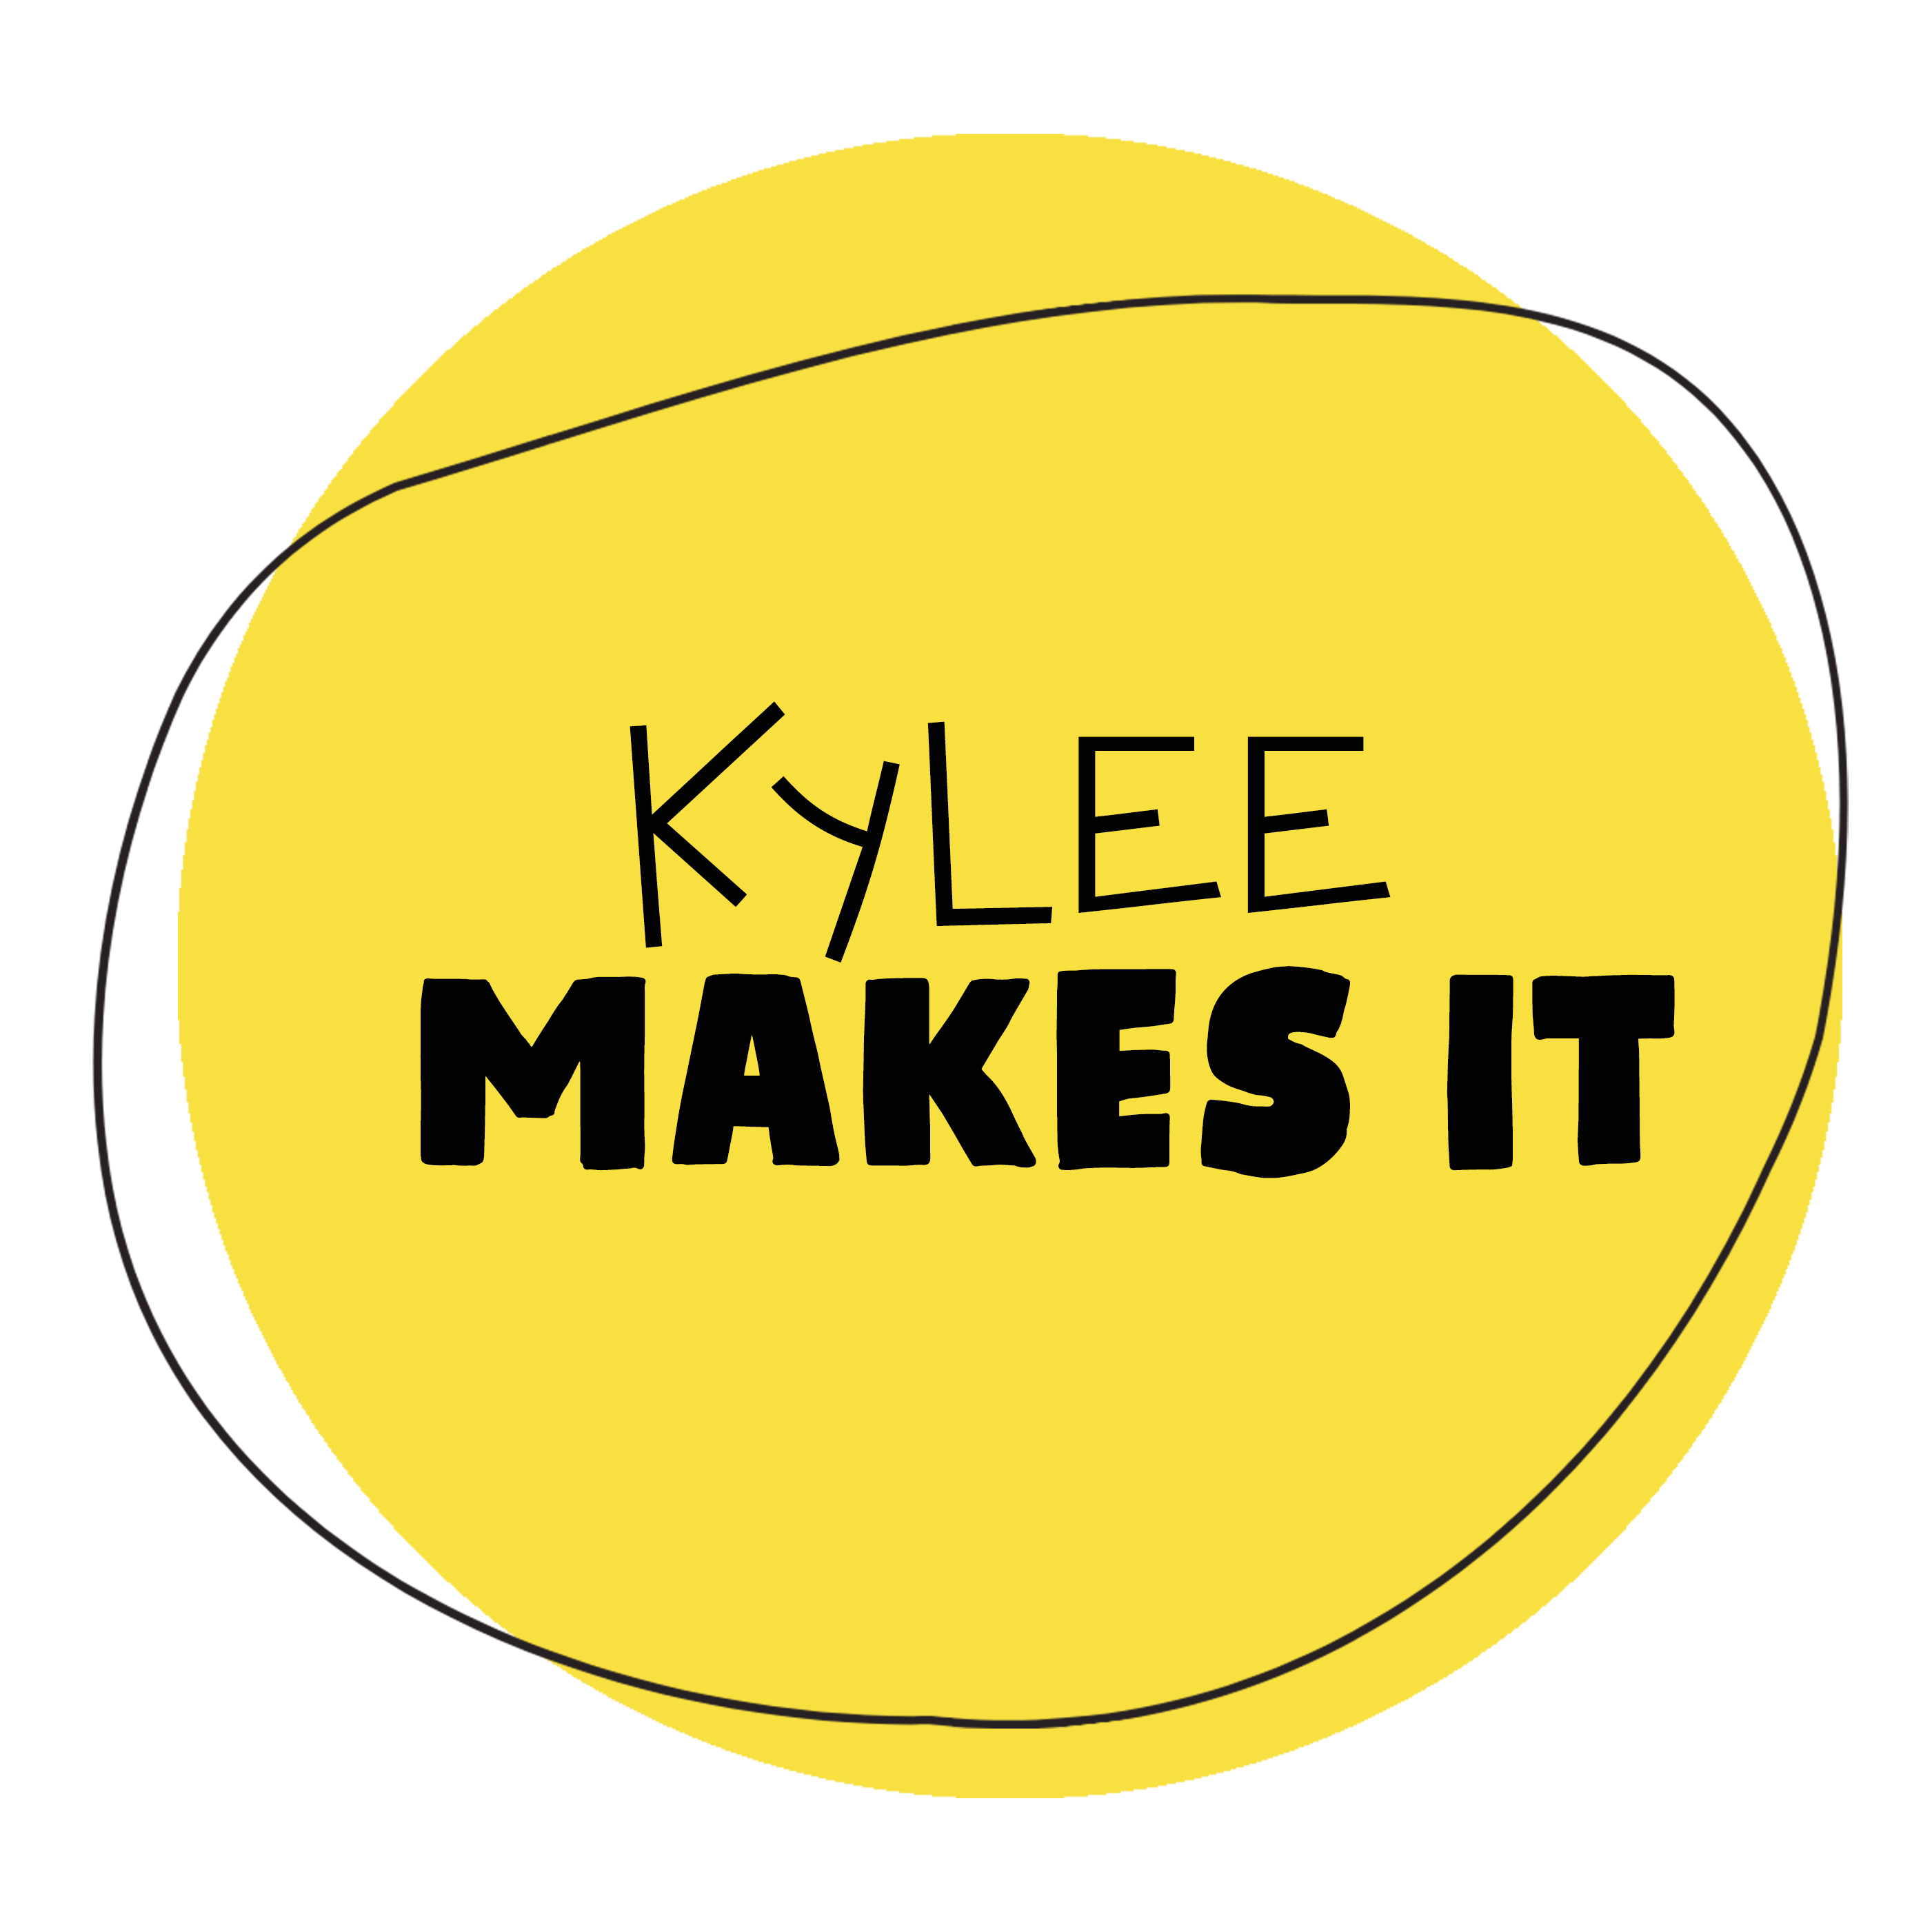 Kylee Makes It